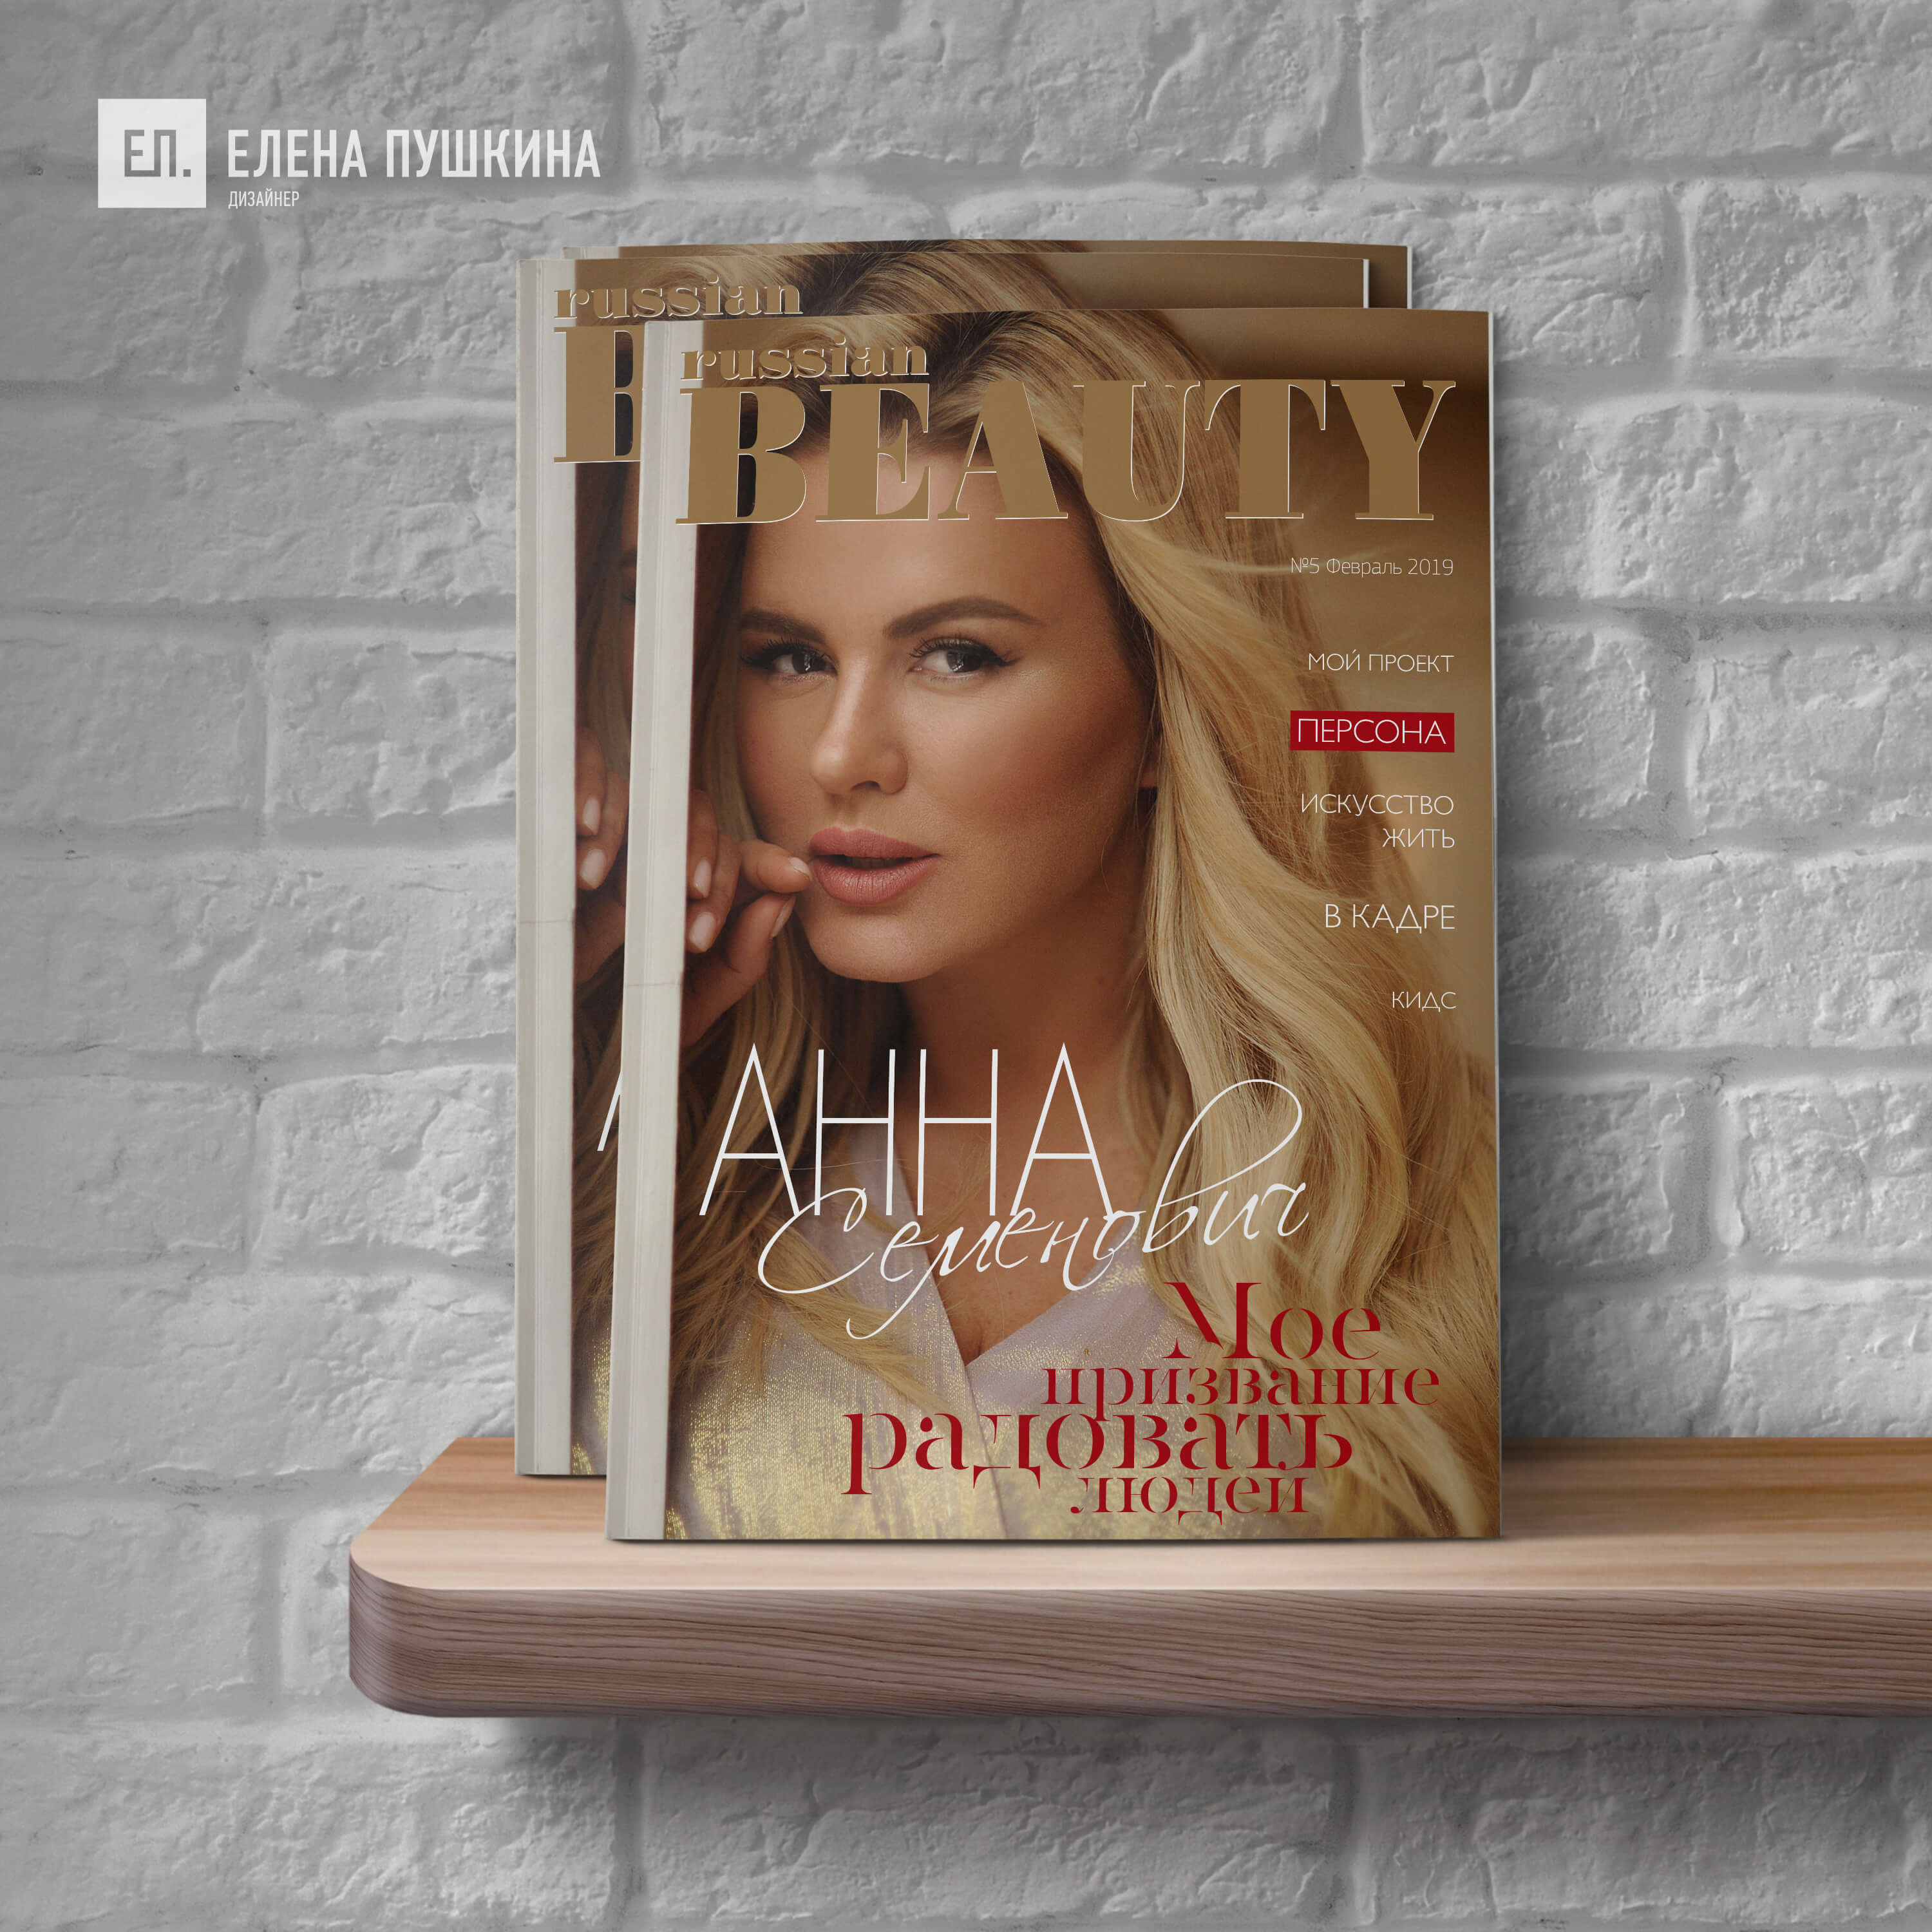 Встречайте весну с глянцевым Luxury журналом «RUSSIAN BEAUTY», 5-й выпуск 2019 год Блог Заметки